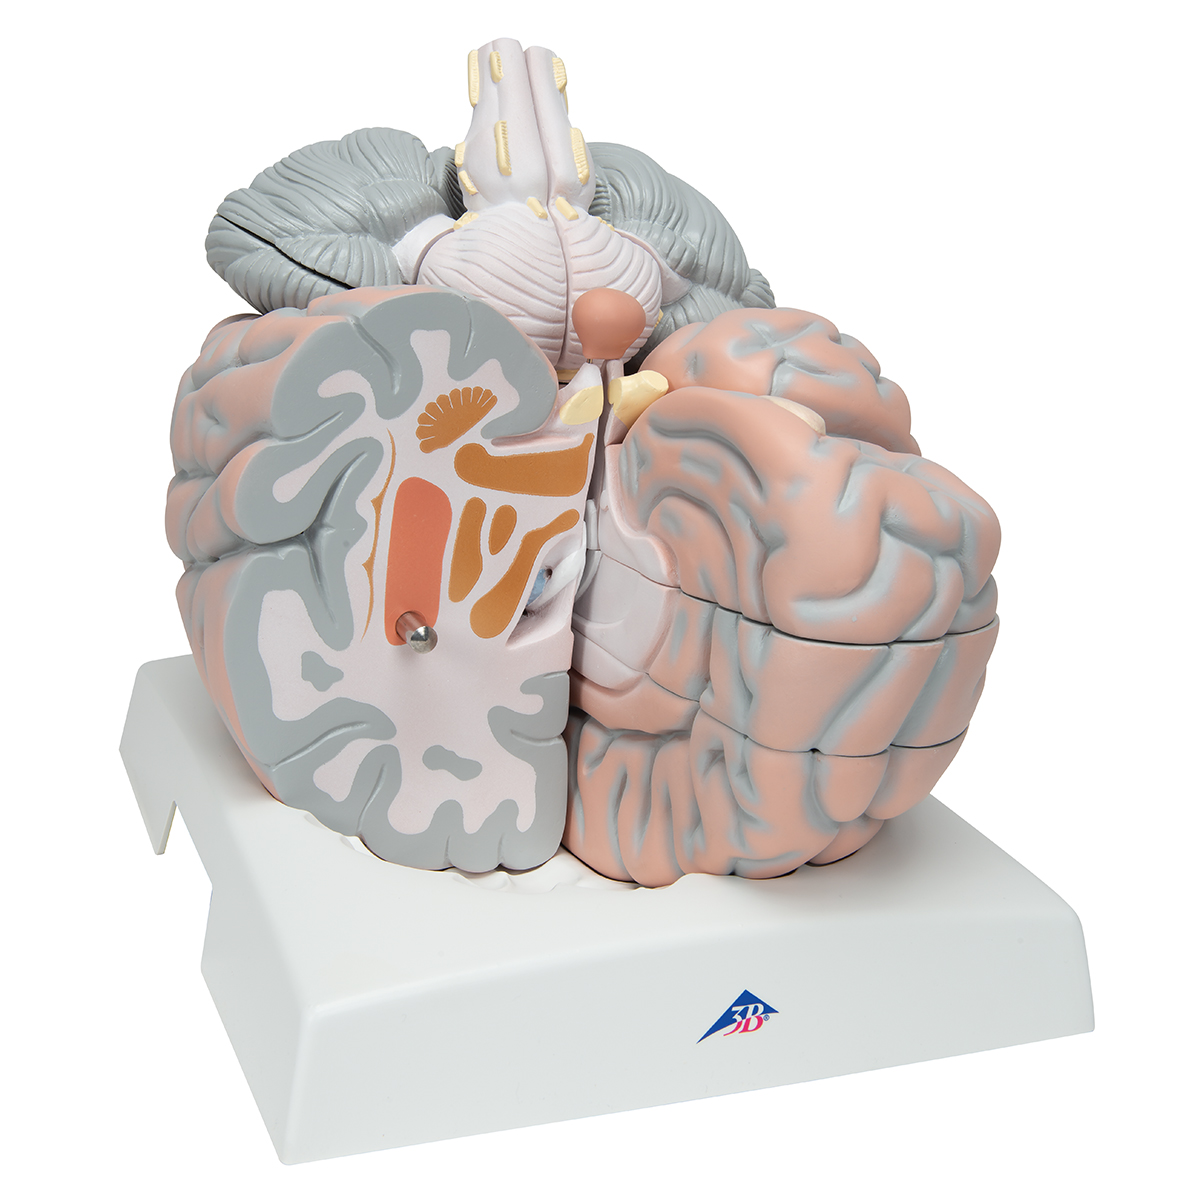 Brain 85. Муляж мозга. Разборная модель головного мозга. Макет мозга. Модель мозга человека.